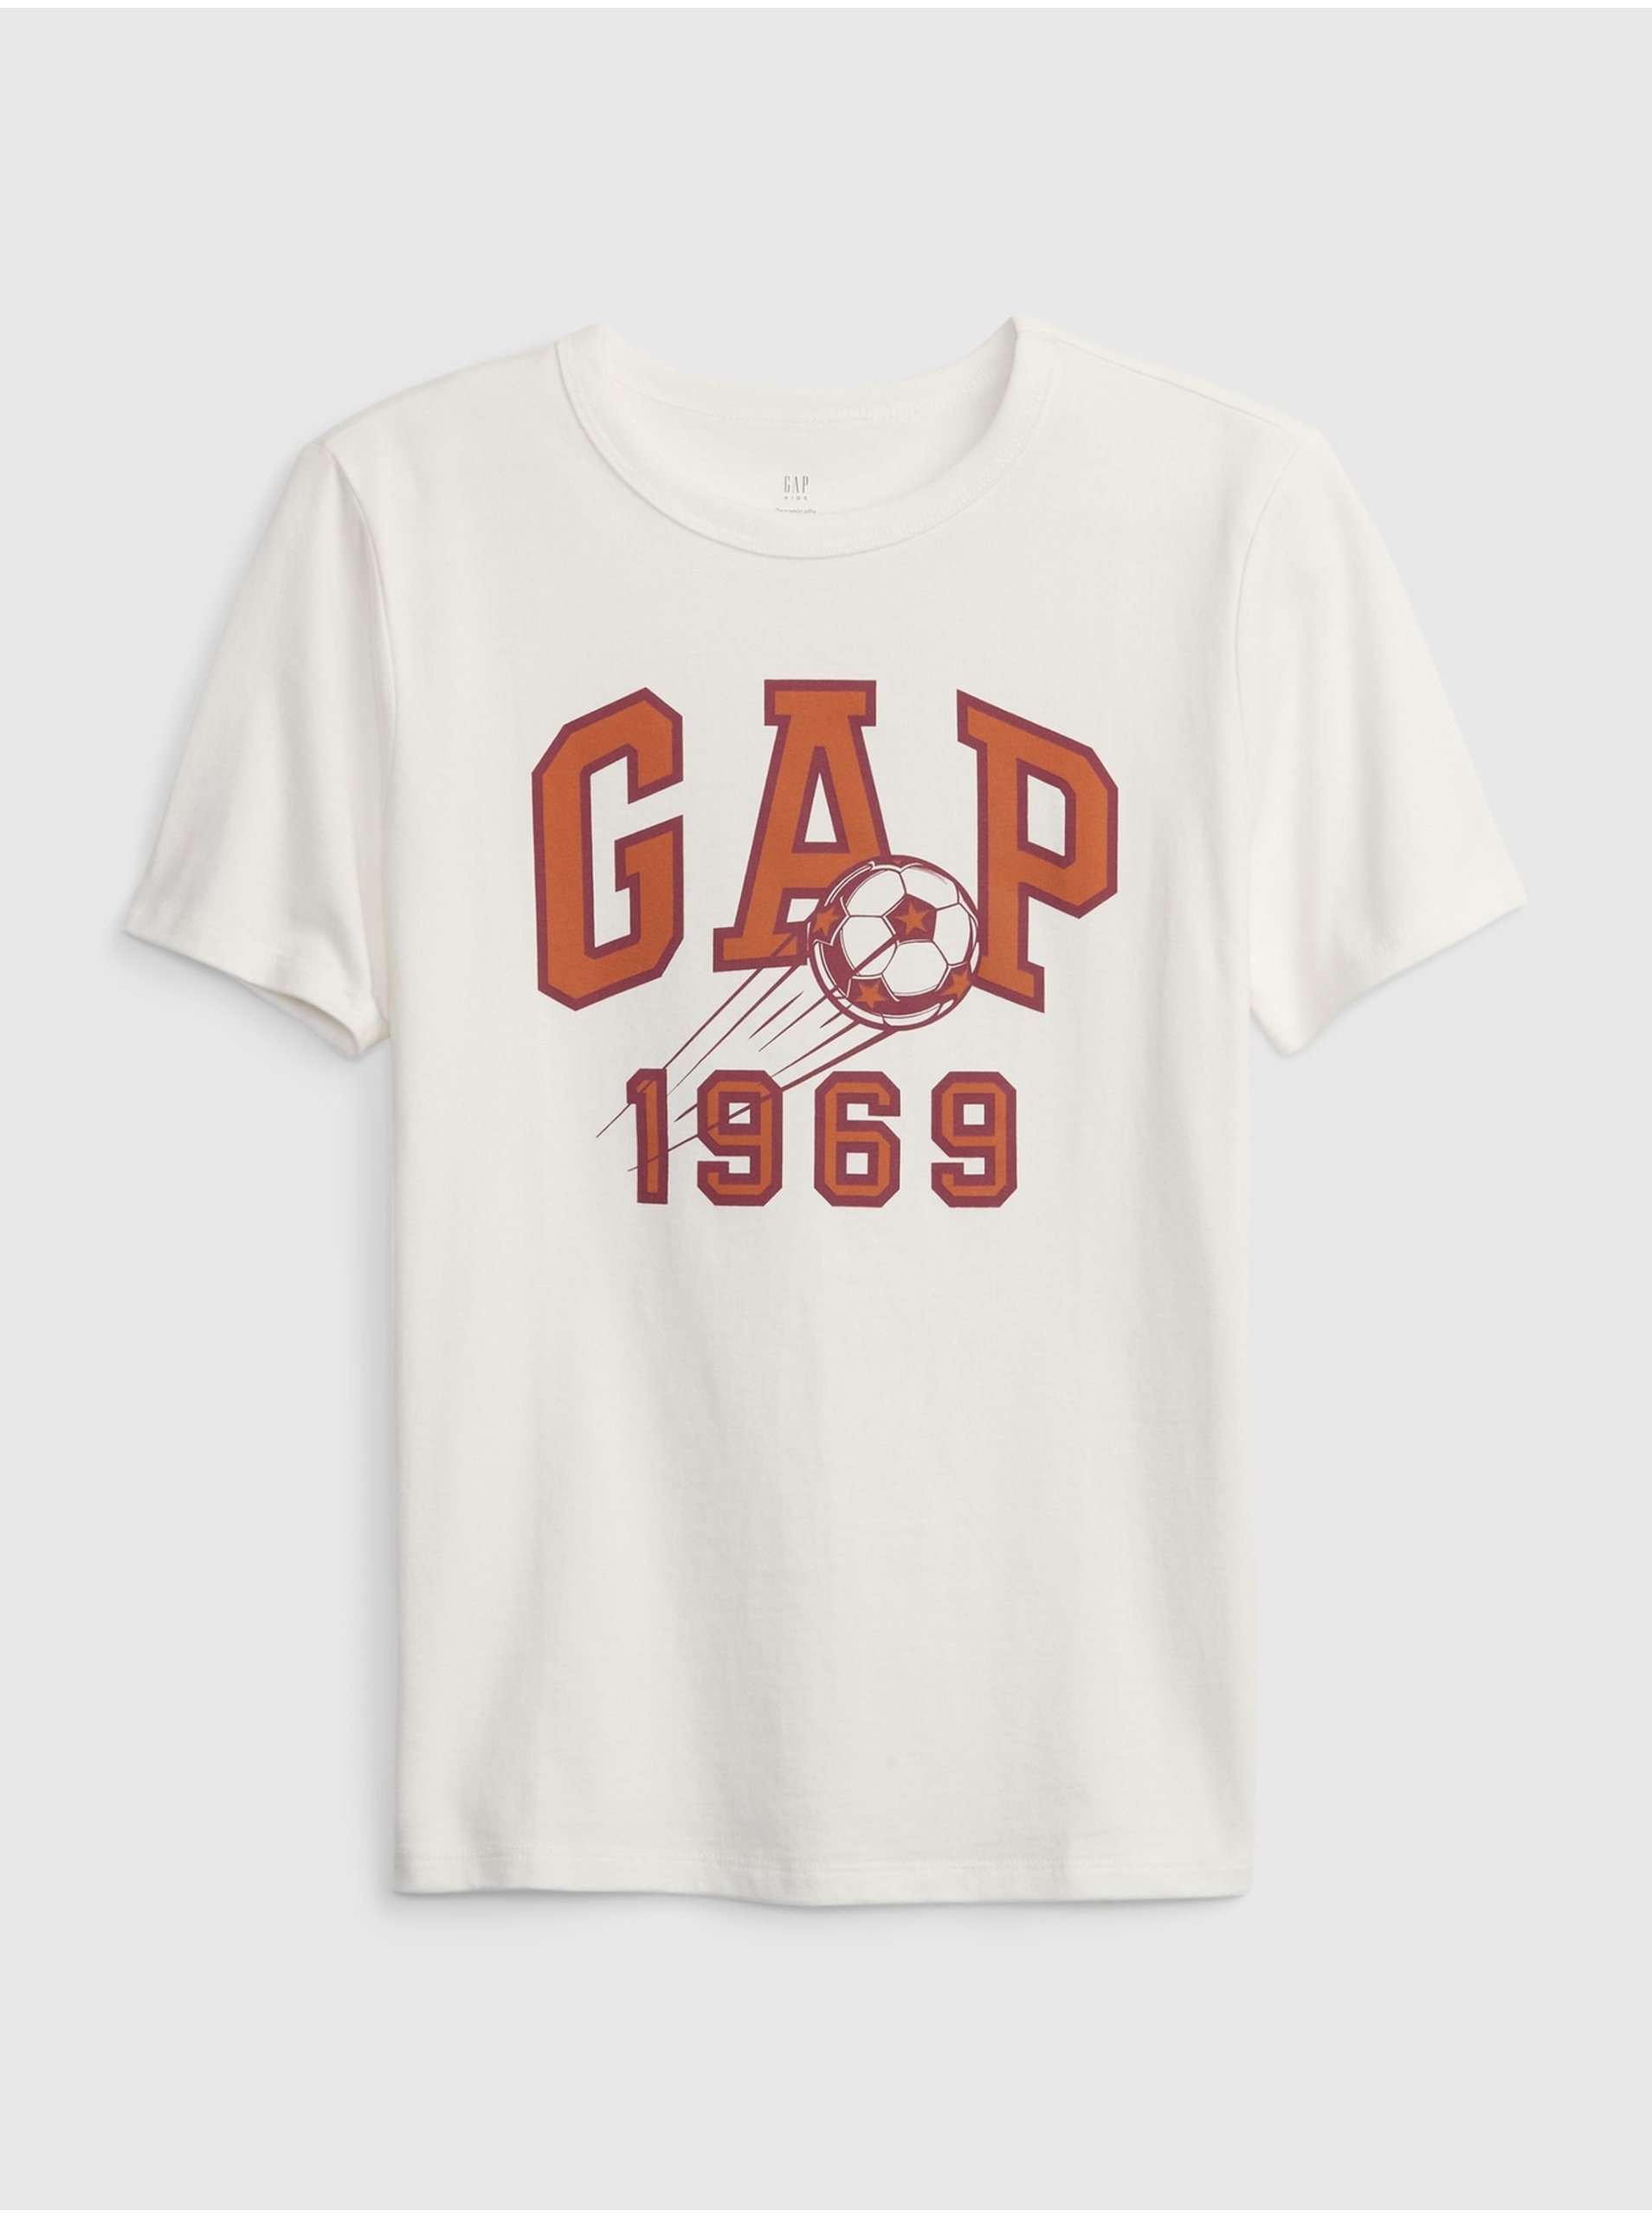 Lacno Biele chlapčenské tričko GAP 1969